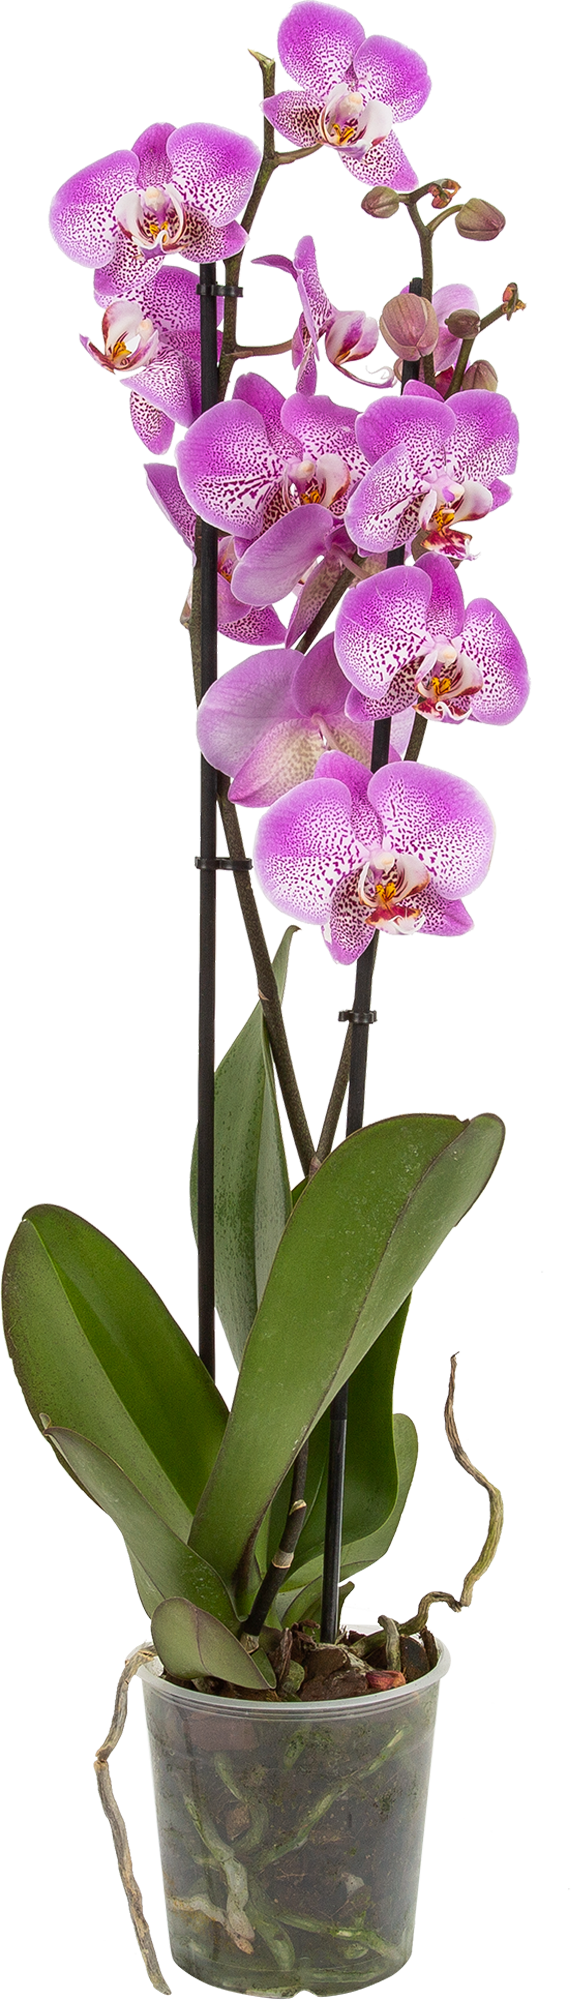 Уникальный вид орхидеи